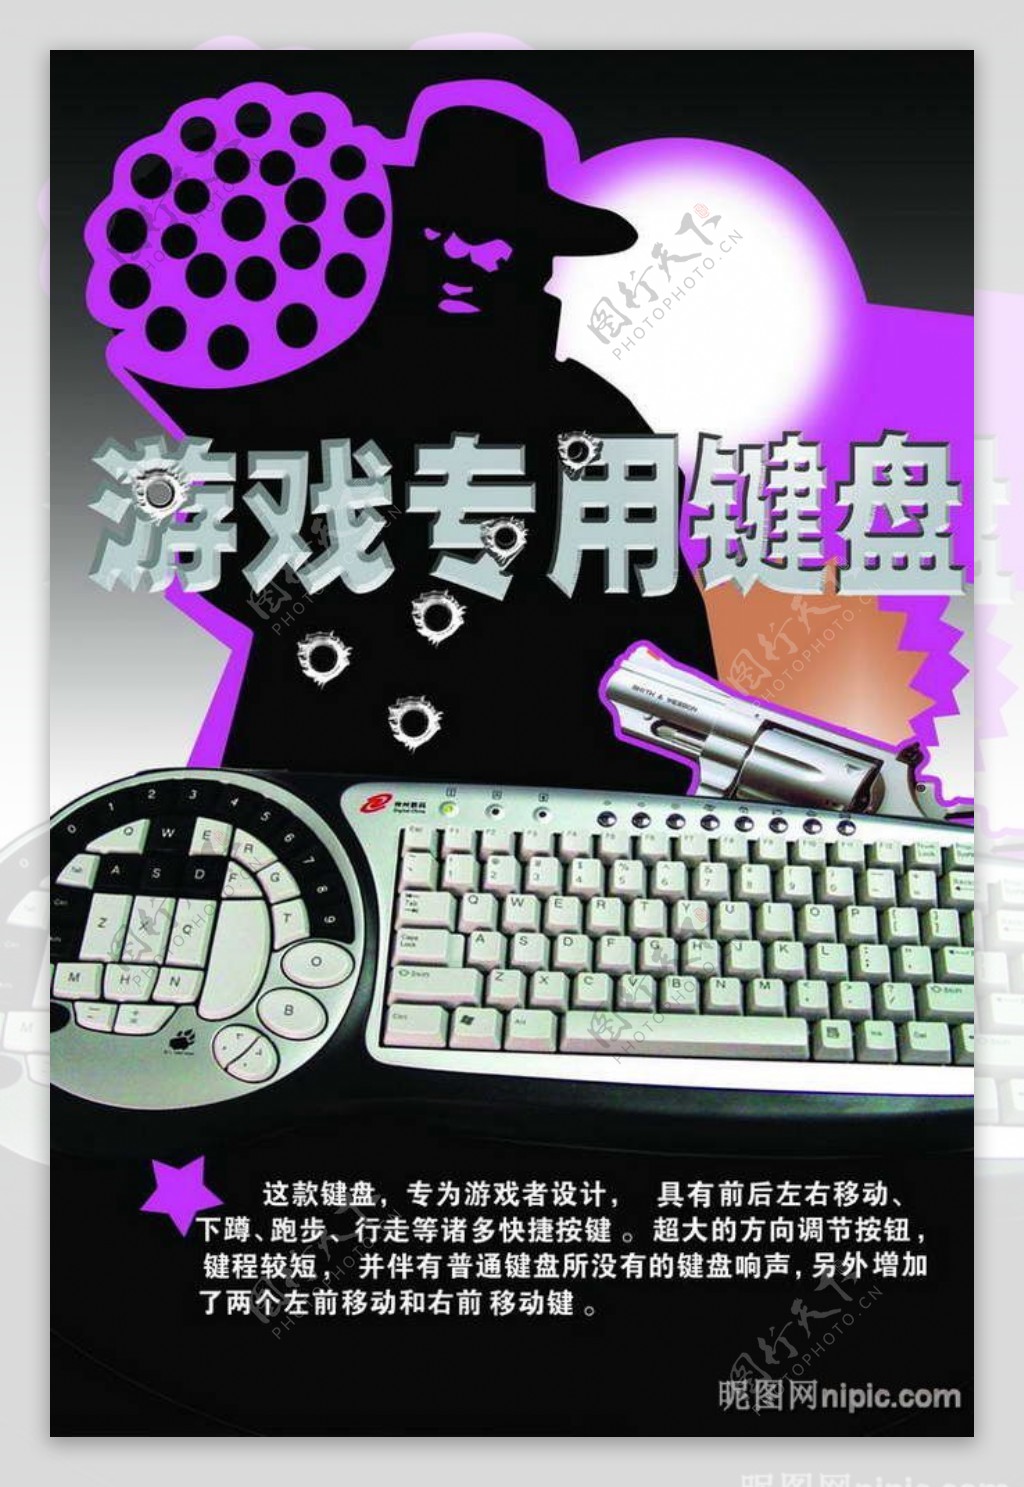 游戏机砖用键盘招贴海报设计PSD模板图片